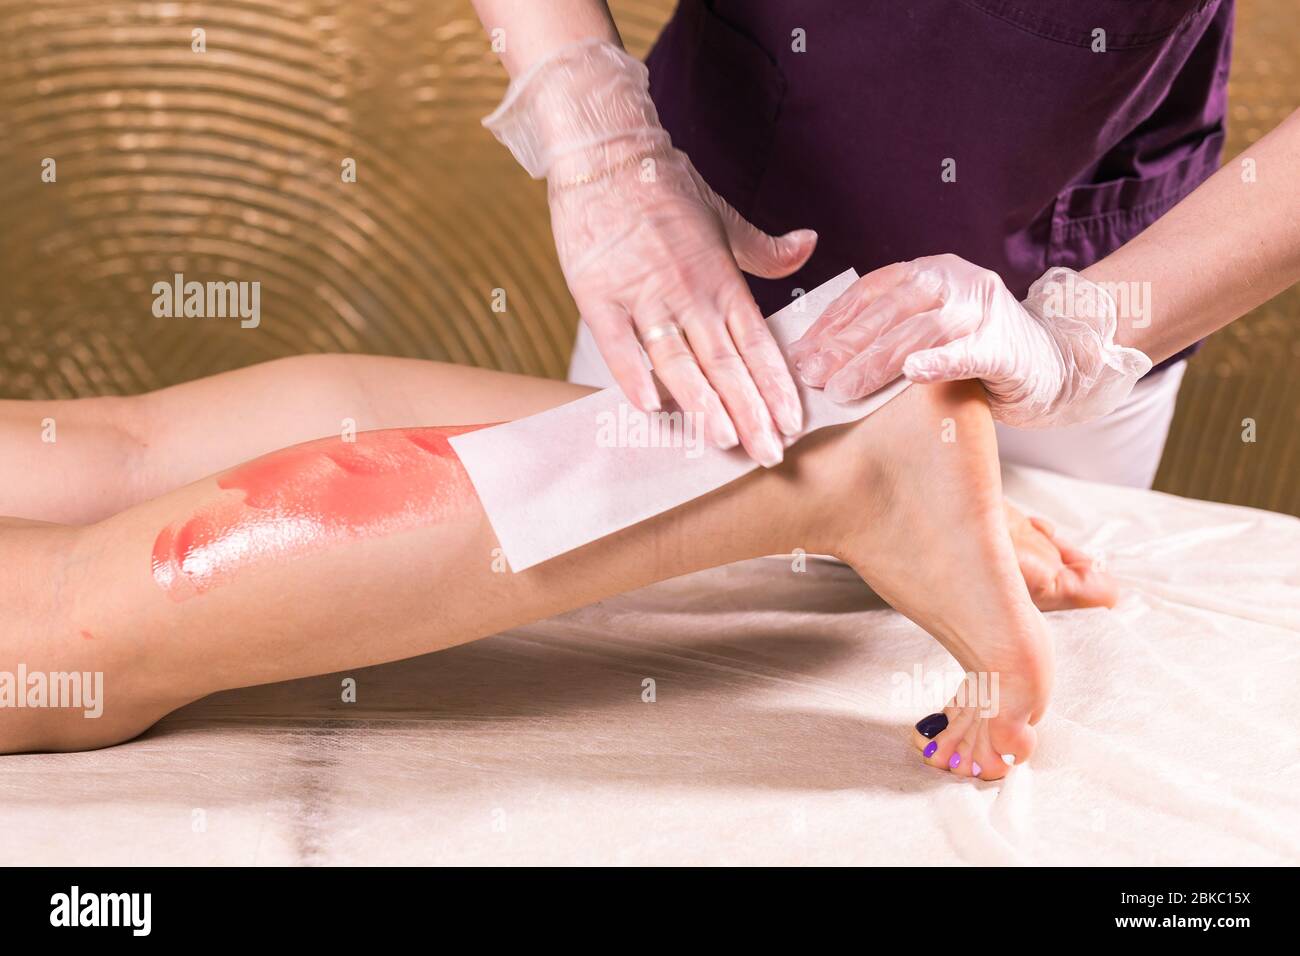 Das Bein der Frau wird gewachst. Salon Wachs Kosmetikerin Epilation  Verfahren. Wachsen weiblichen Körper für die Haarentfernung durch  Therapeuten Nahaufnahme. Glattes Beinkonzept Stockfotografie - Alamy